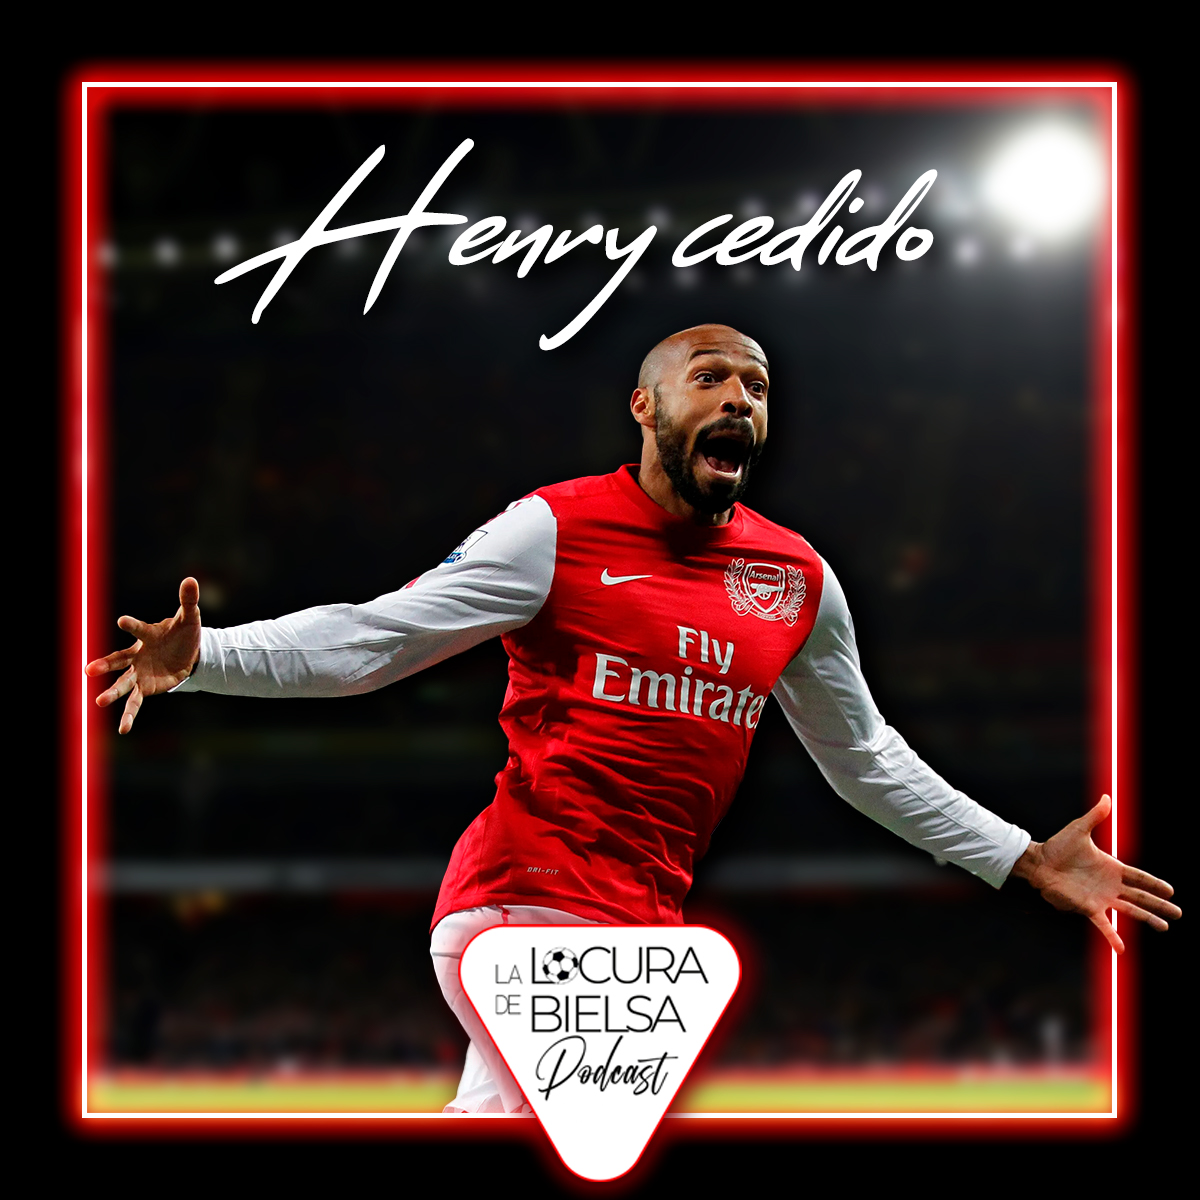 Cersion Henry Arsenal temporada 11 12 locura de bielsa podcast futbol